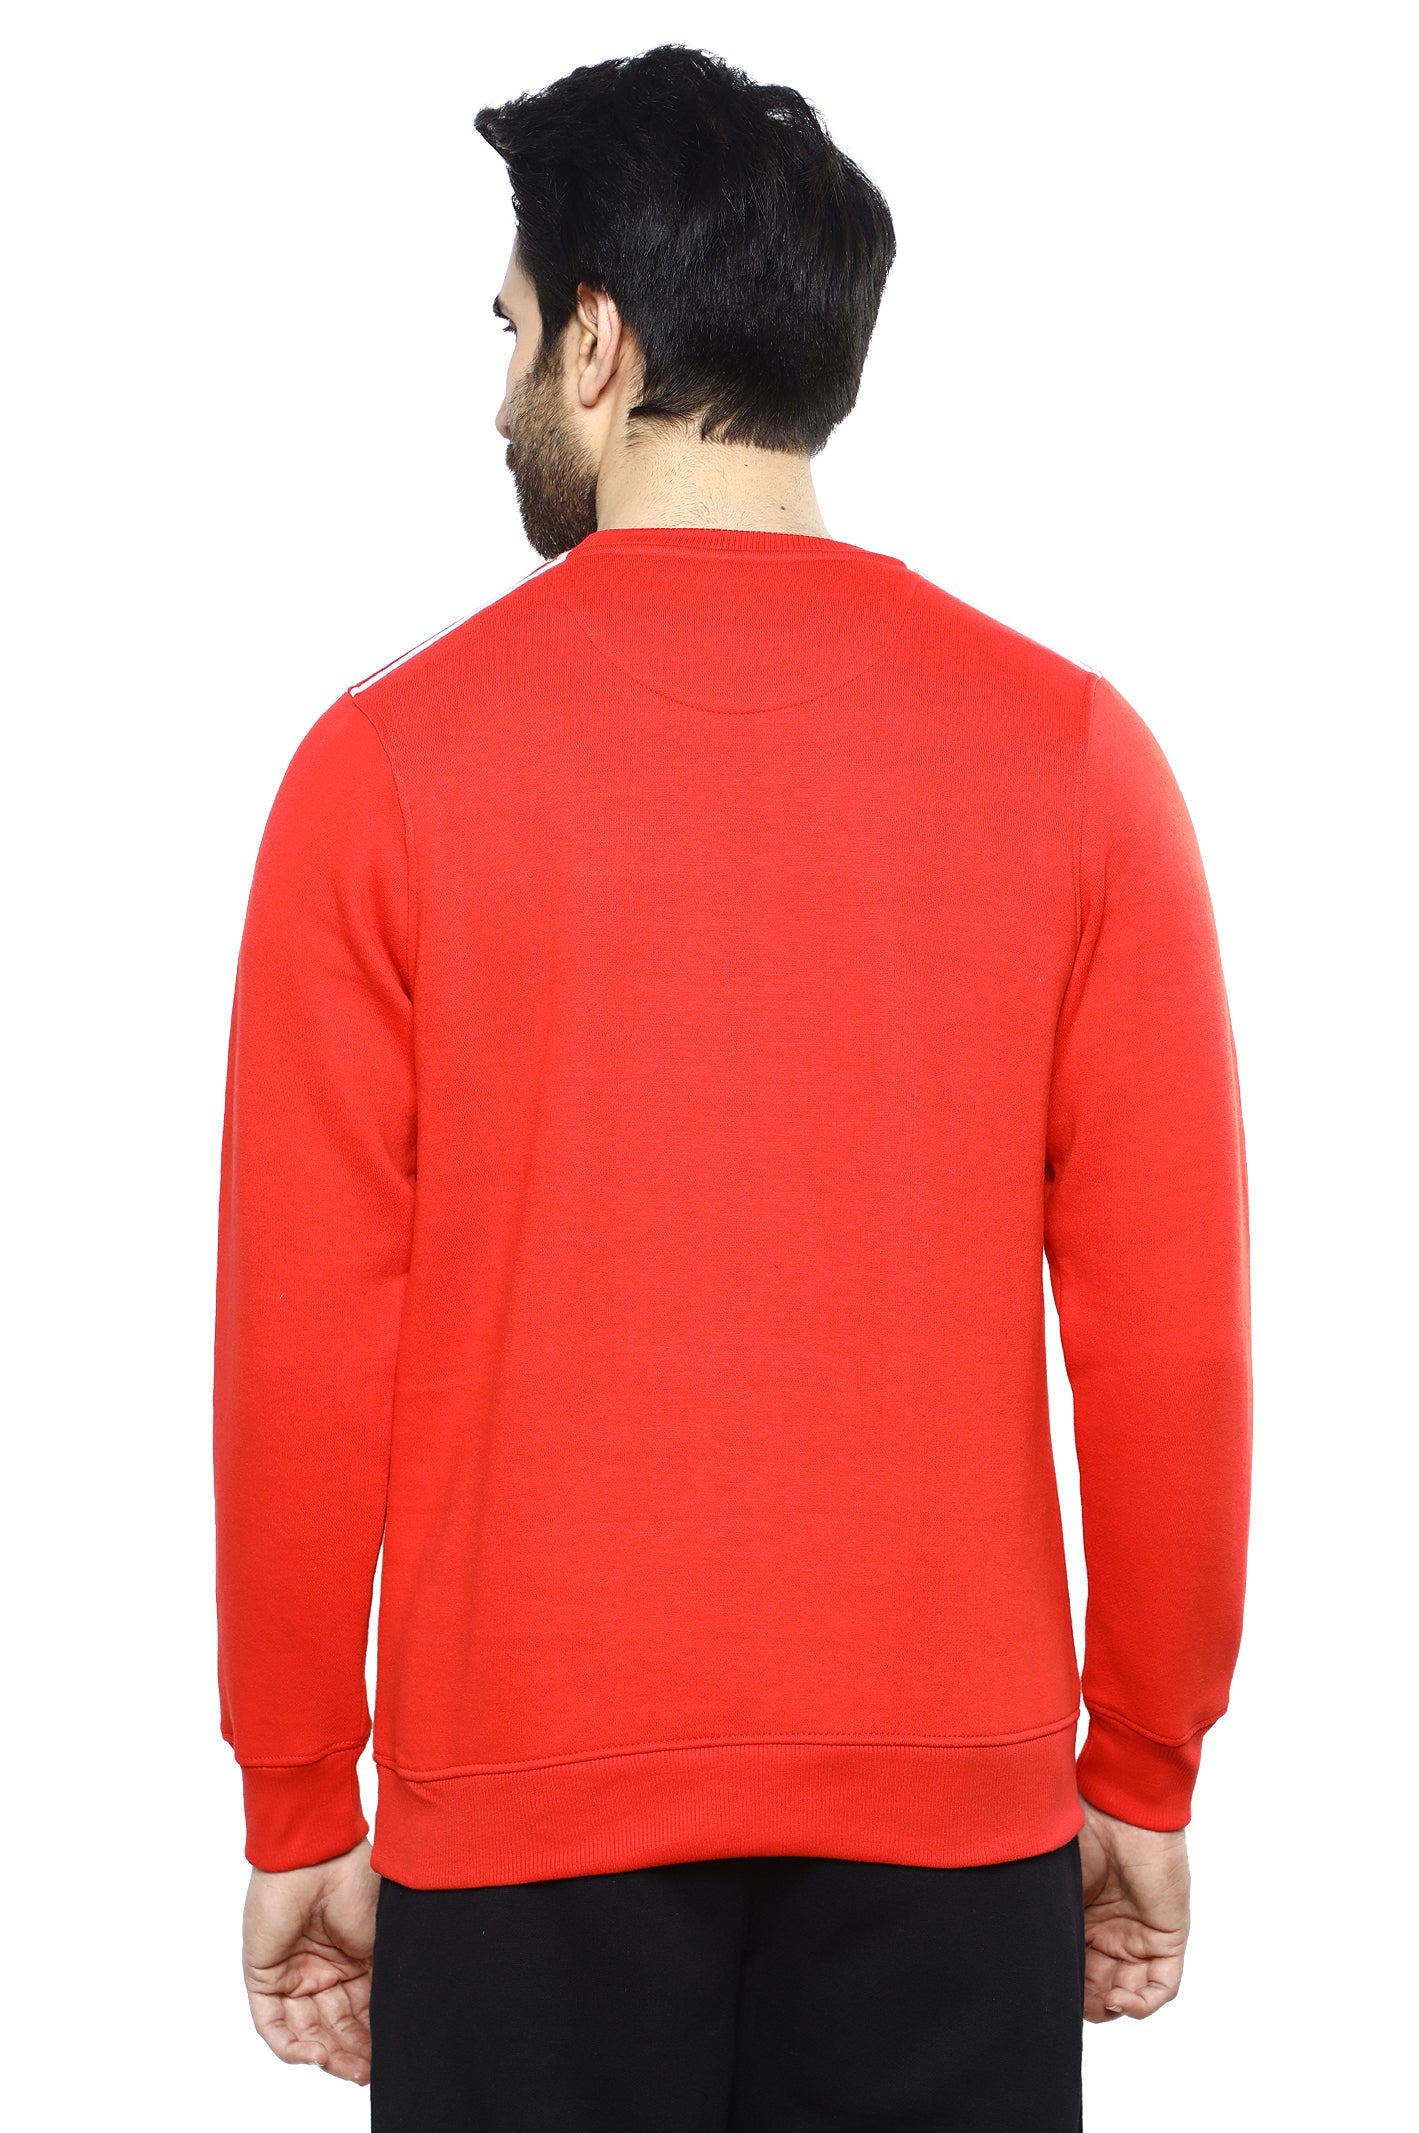 Diner's Men's Sweatshirt SKU: FA976-RED - Diners